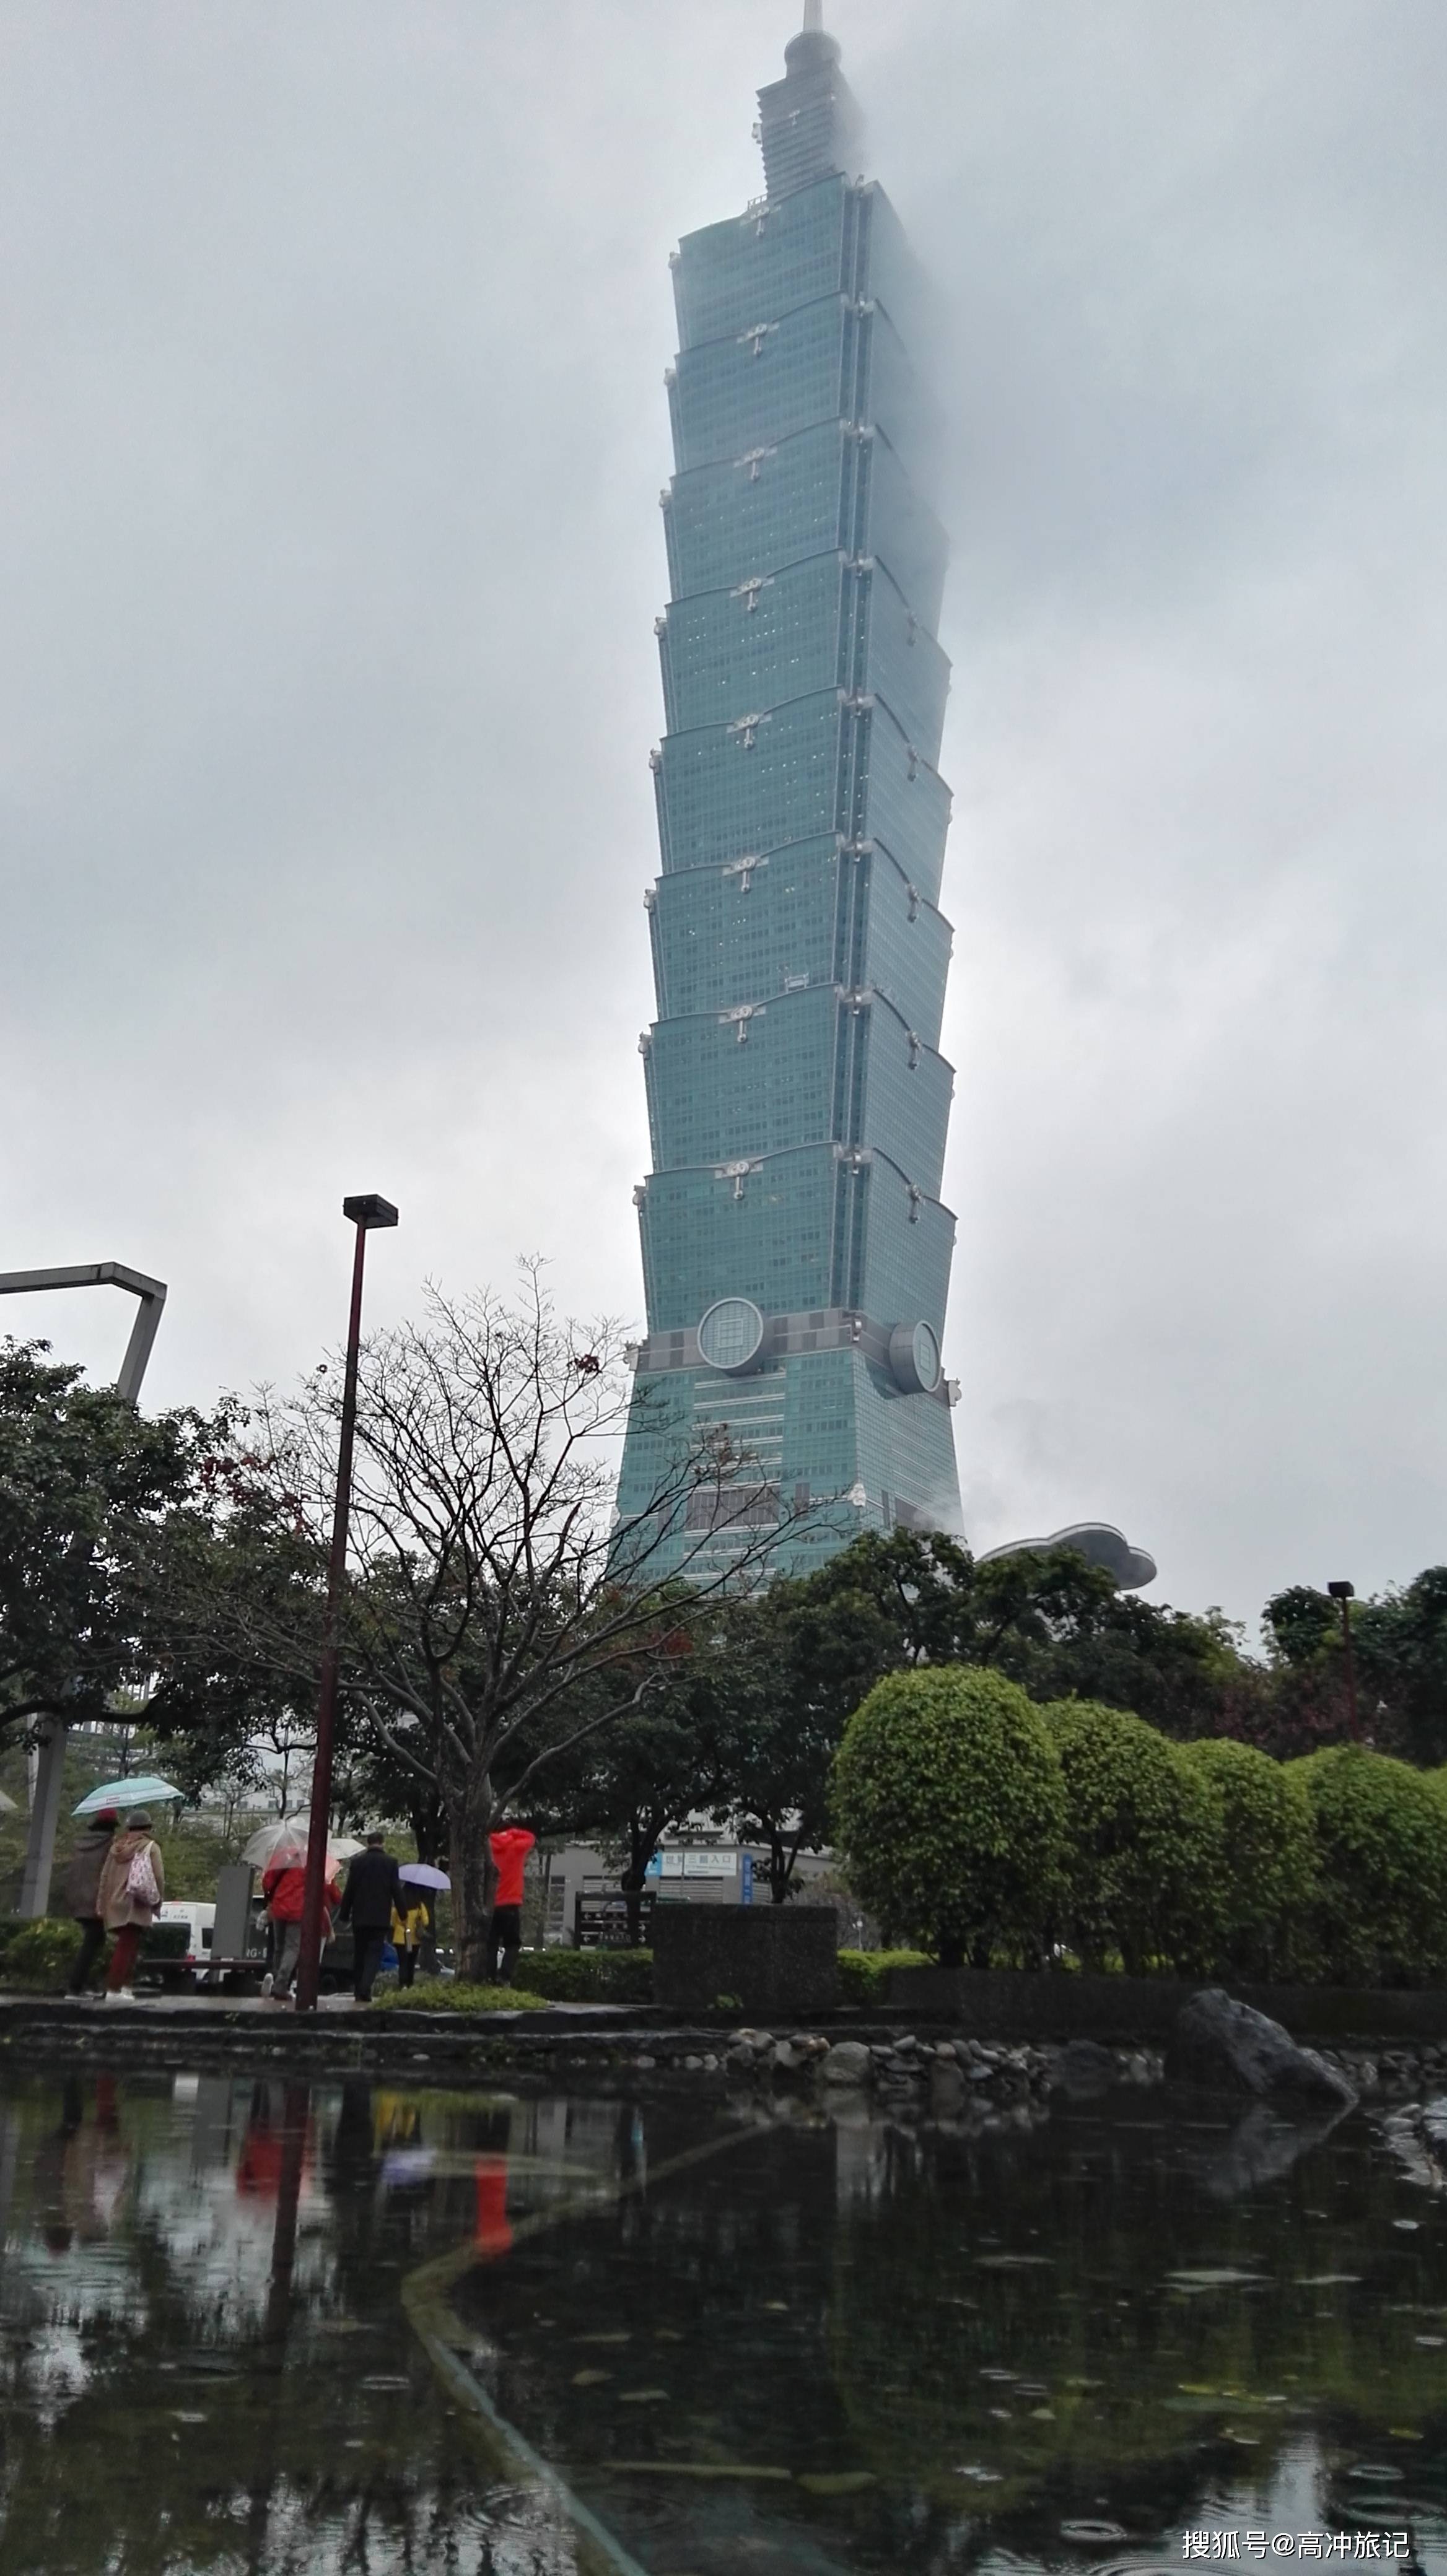 台北101大楼图片鉴赏,位于台北市信义区.